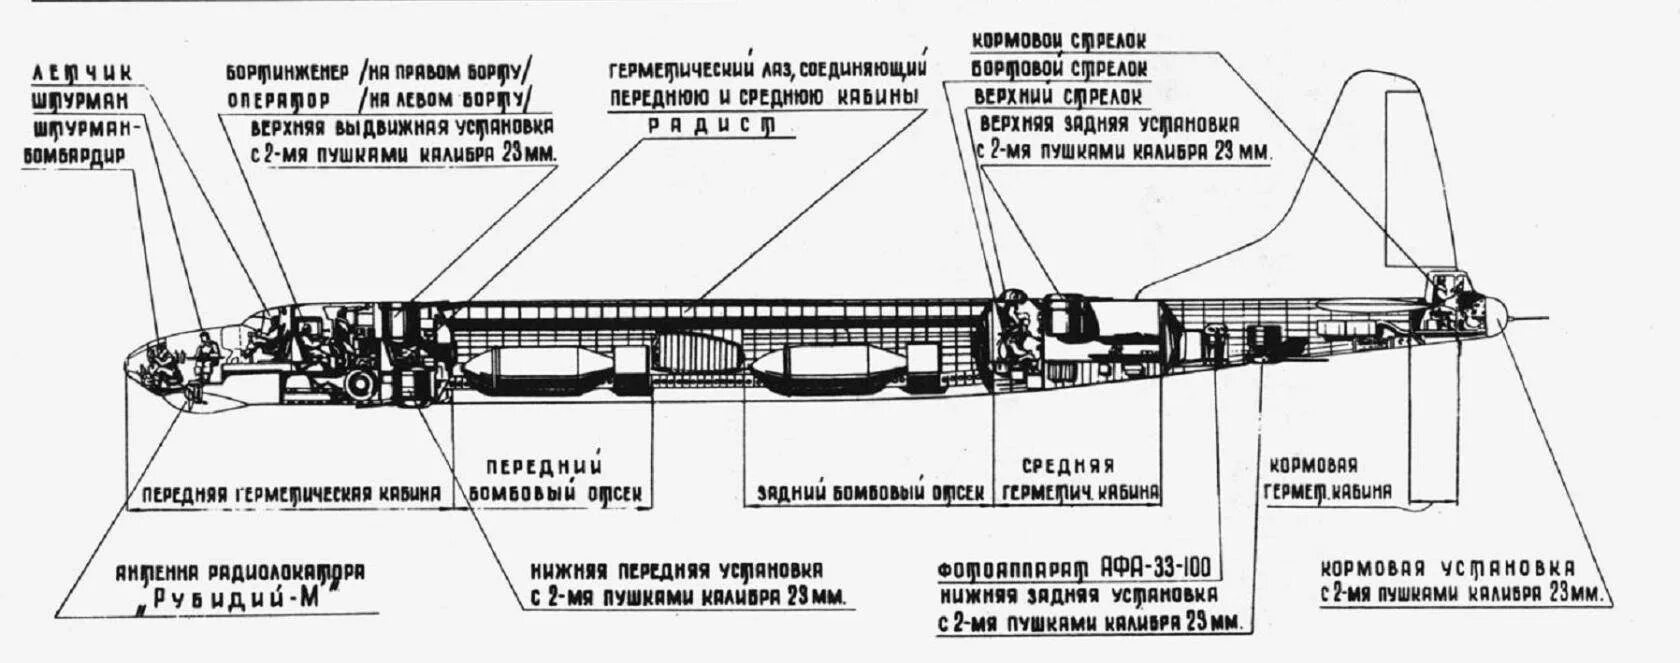 Ту 95 МС Компоновочная схема. Кабина ту-22м3 схема. Ту-85 бомбардировщик. Компоновочная схема самолета ту 95. Ту 22м3 характеристики самолета вооружение